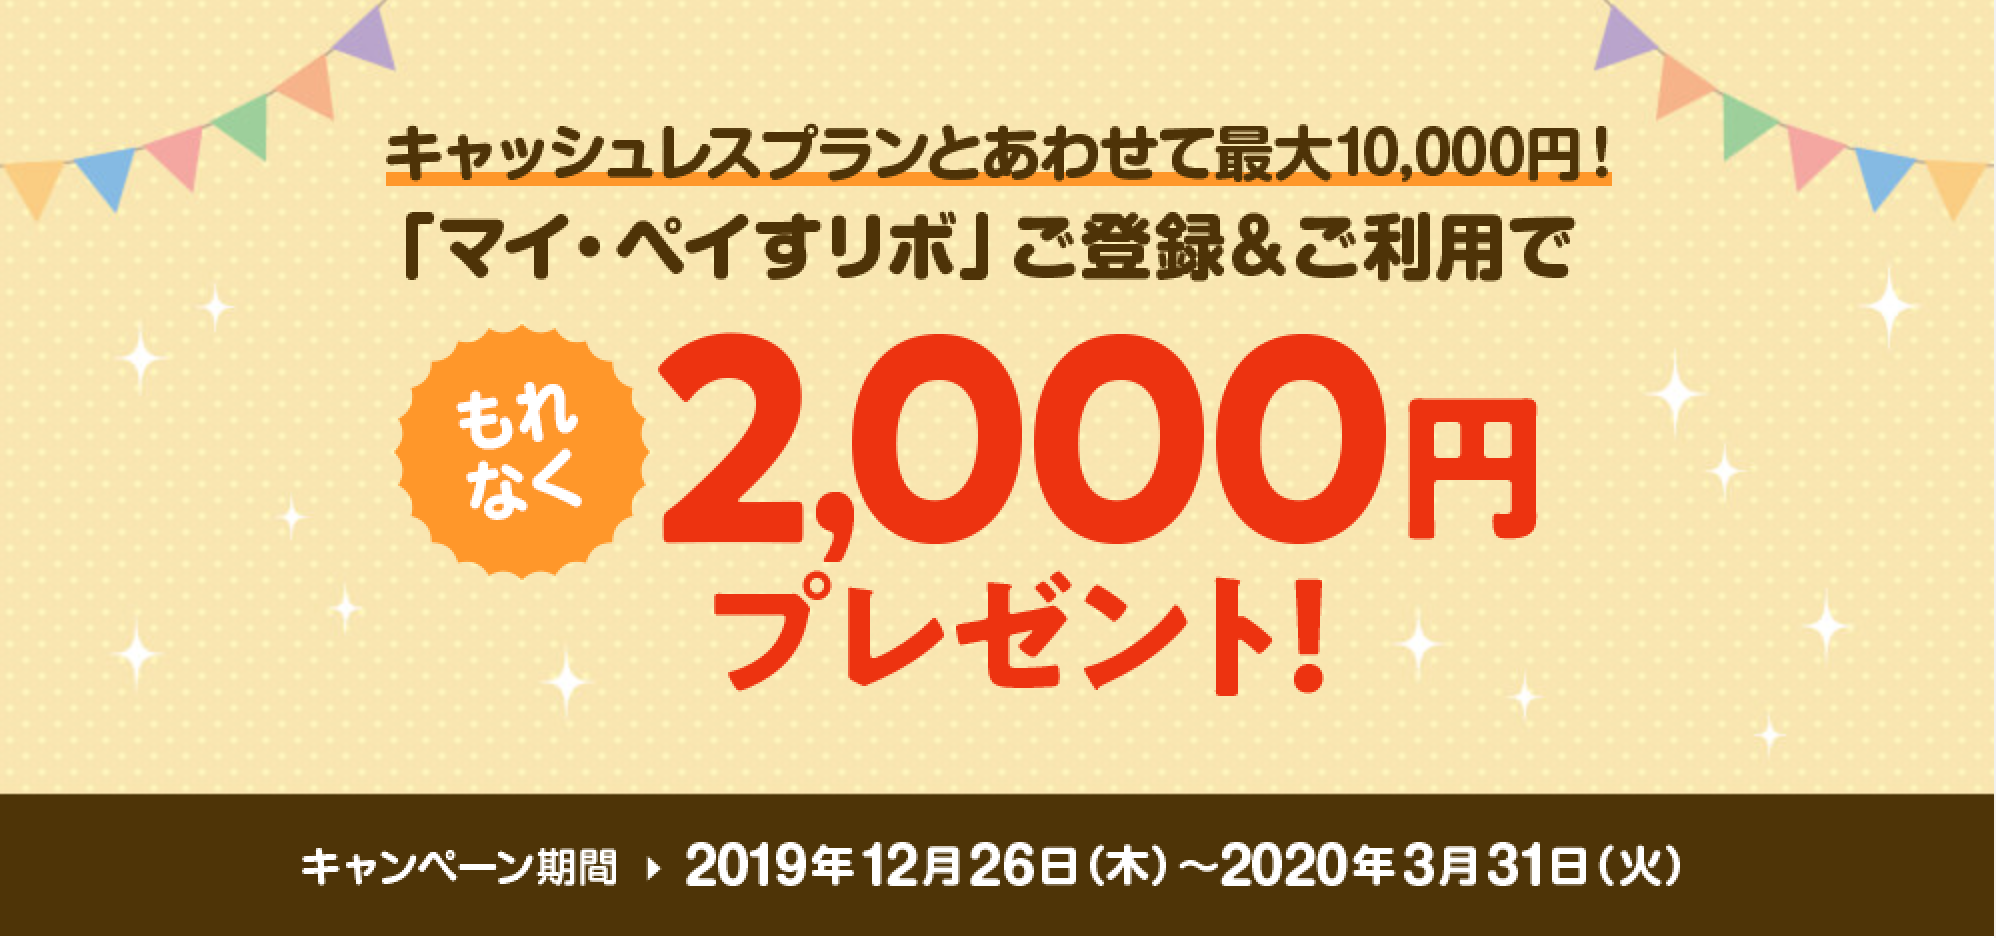 三井住友カードの新カード発行キャンペーン